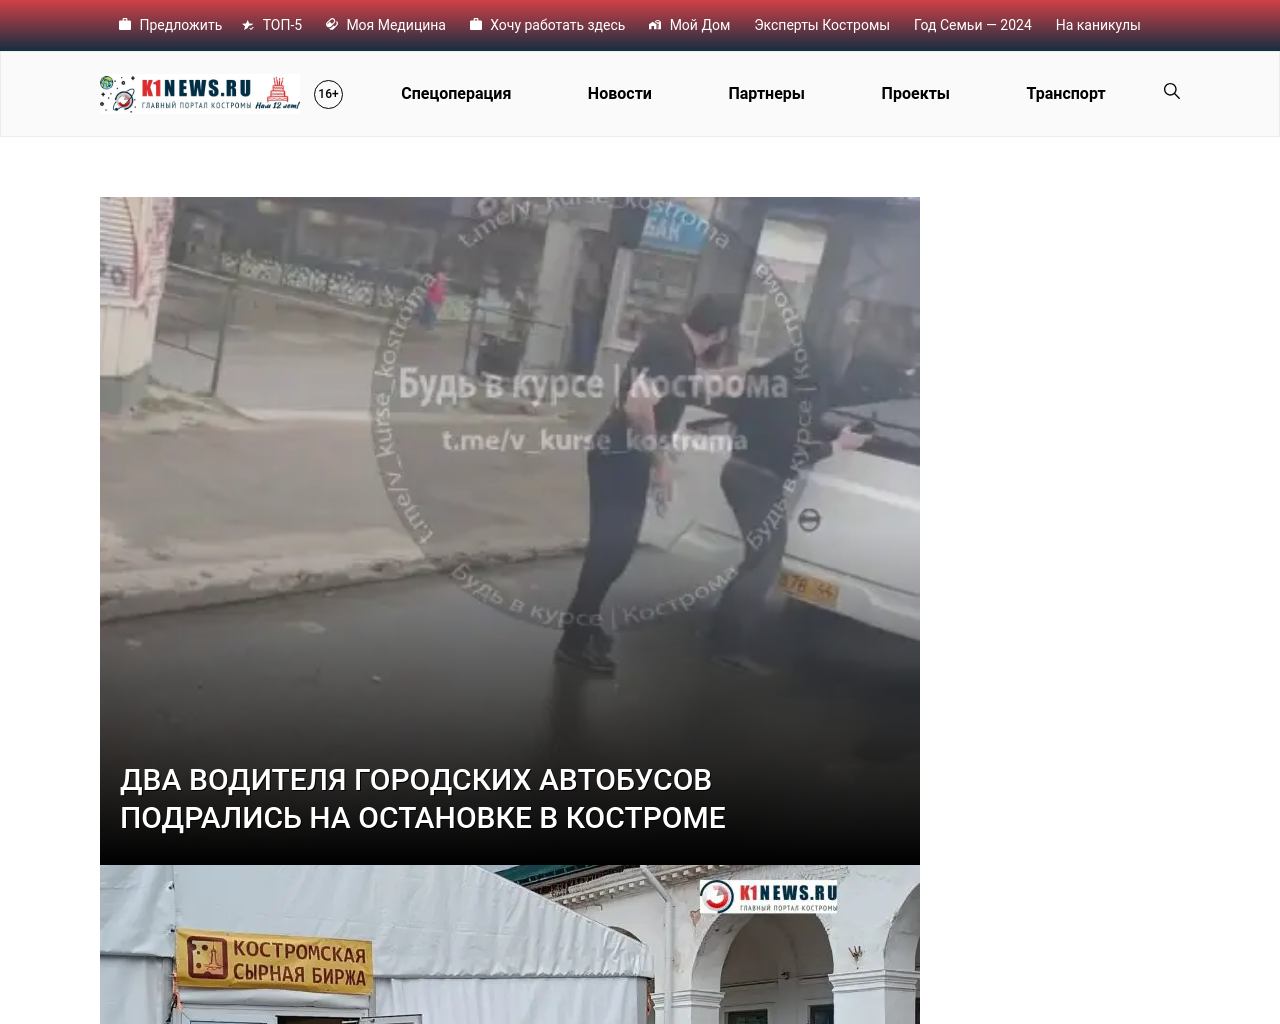 k1news.ru